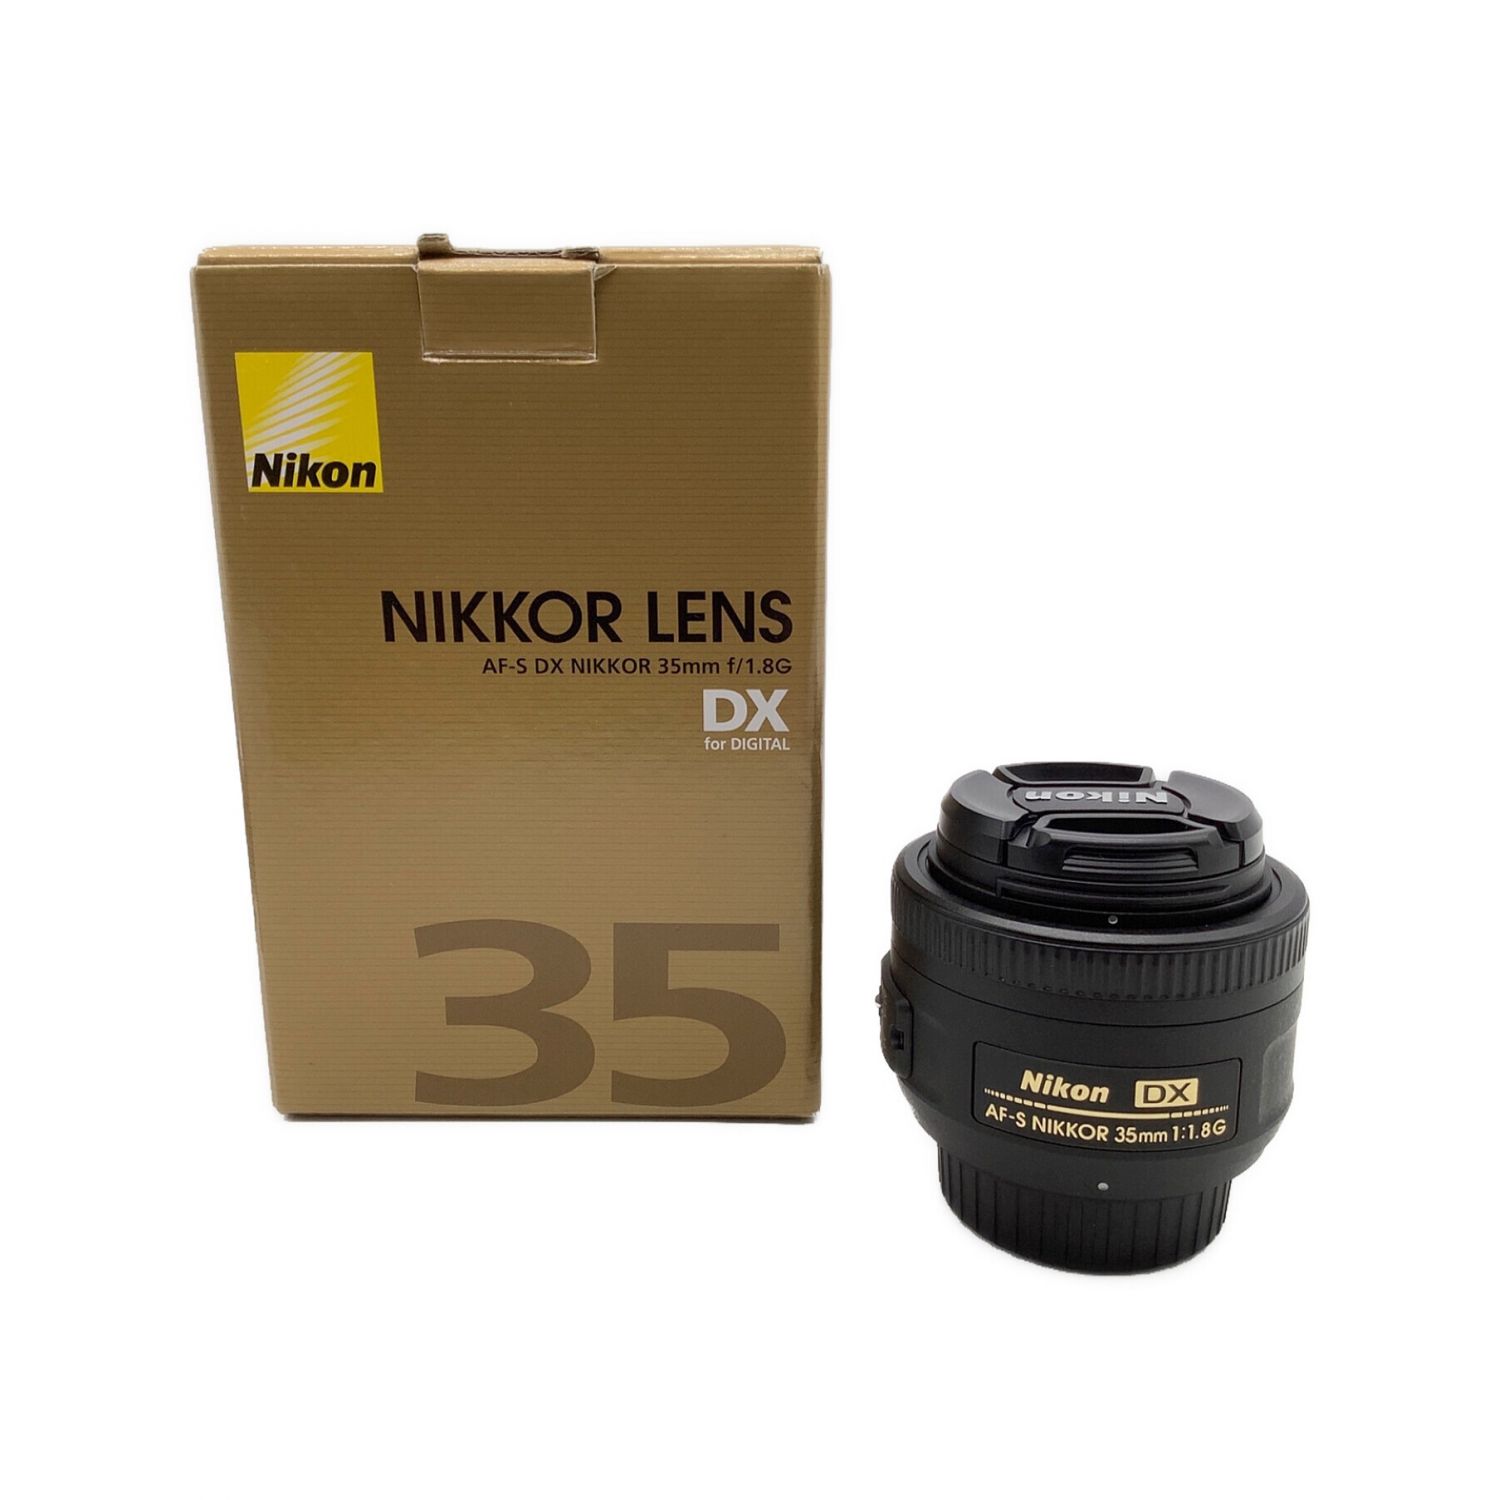 Nikon (ニコン) 単焦点レンズ AF-S DX NIKKOR 35mm f/1.8G 35 mm AF/MF